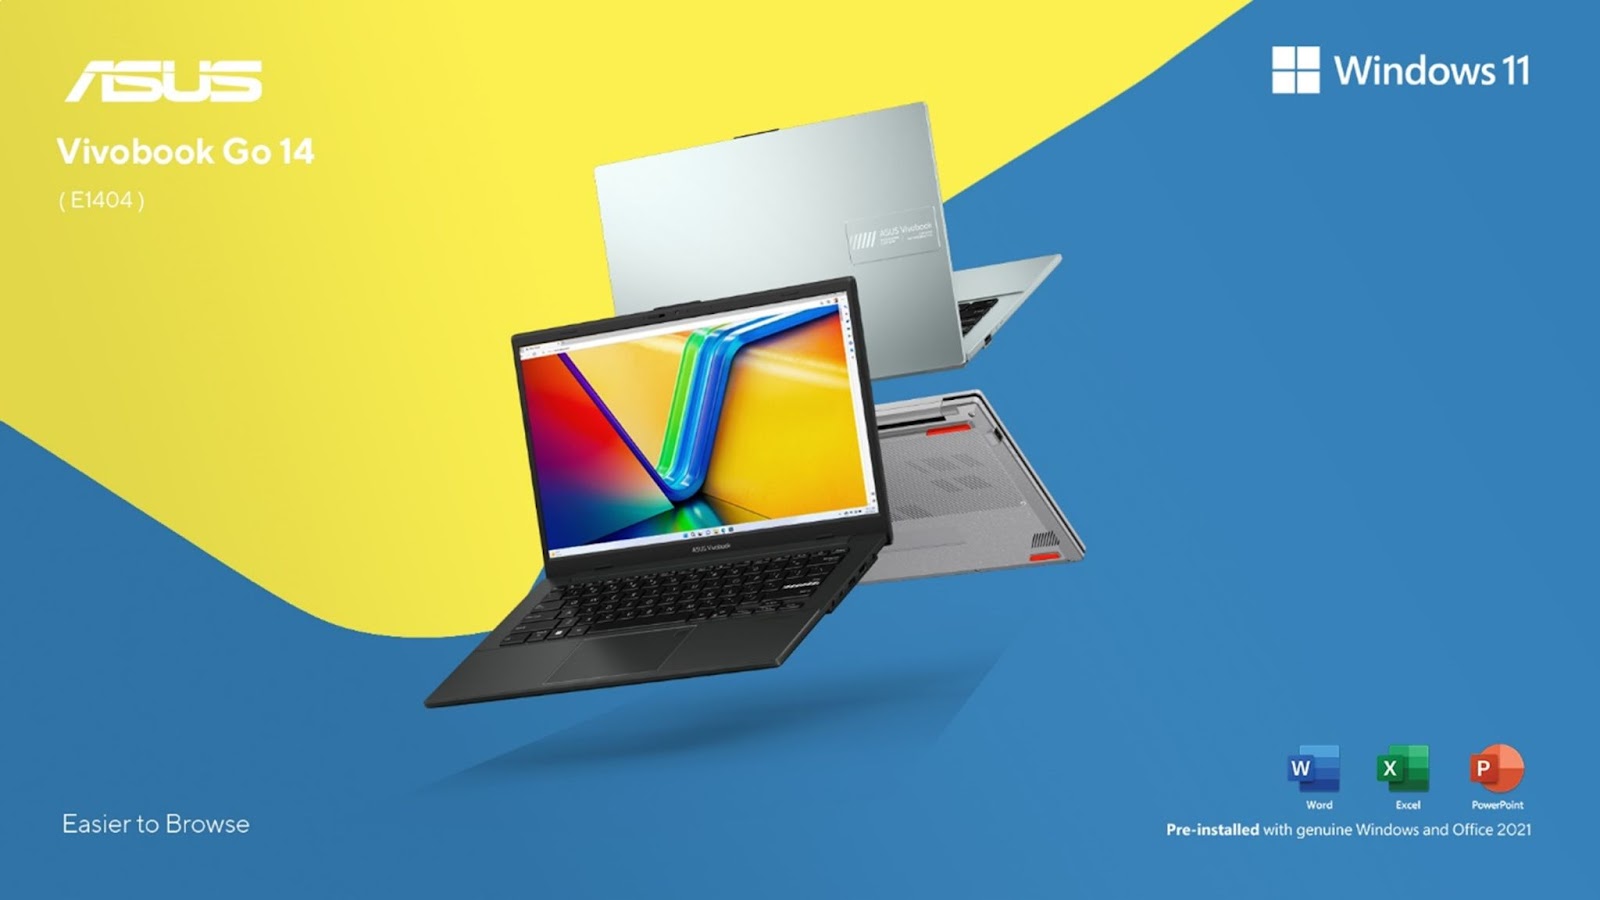 Laptop ASUS Vivobook Go 14, Punya Spesifikasi Lengkap Untuk Pelajar